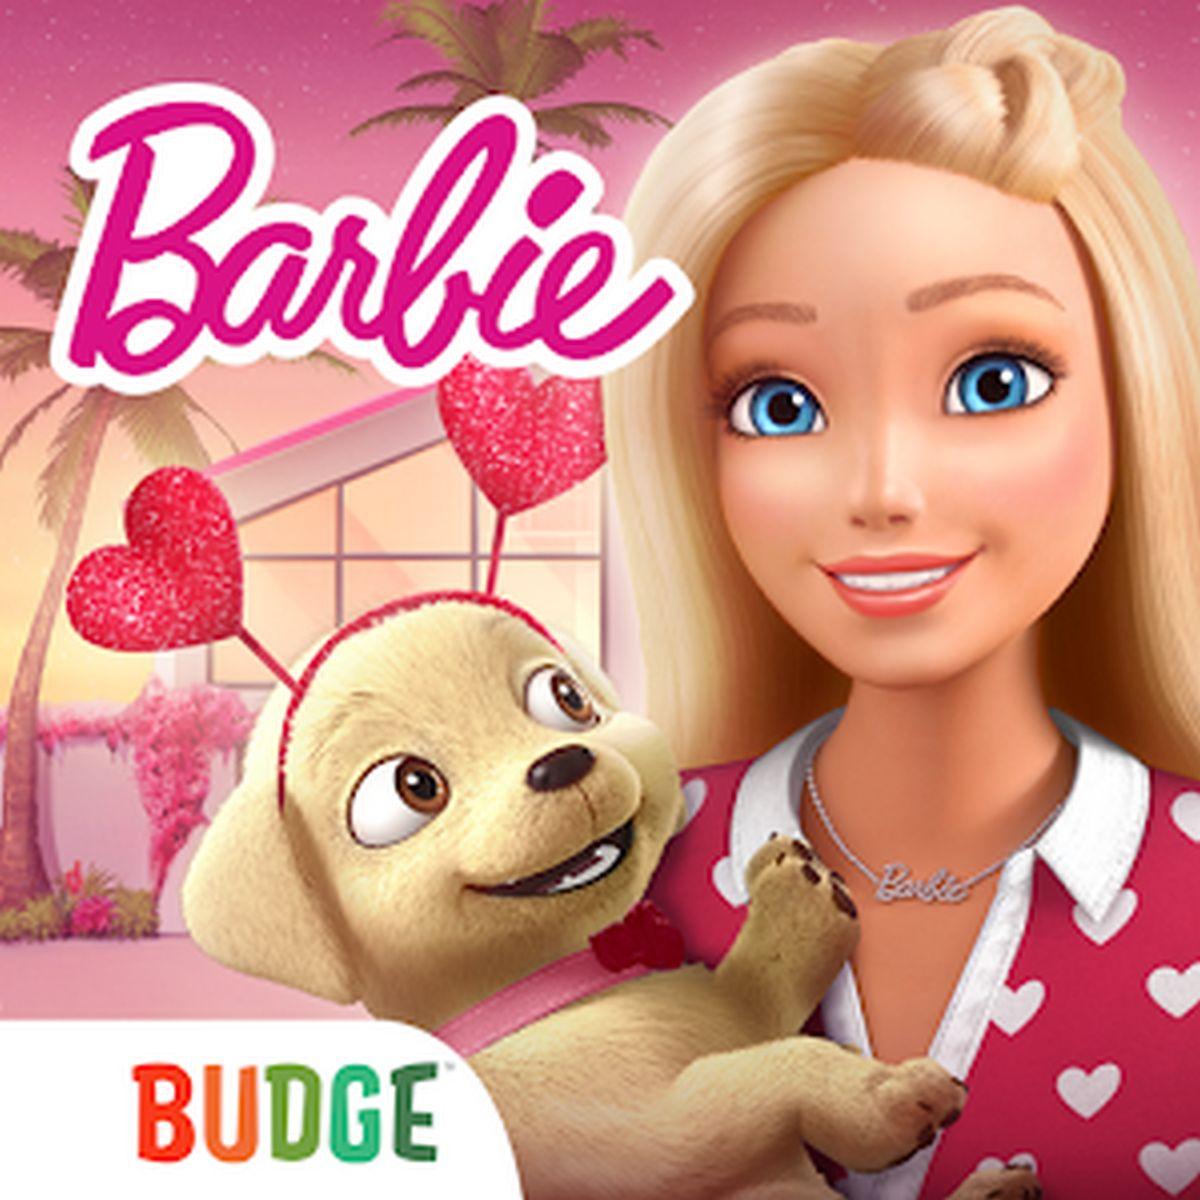 Barbie Dreamhouse Adventures APK MOD v13.0 (Premium desbloqueado)